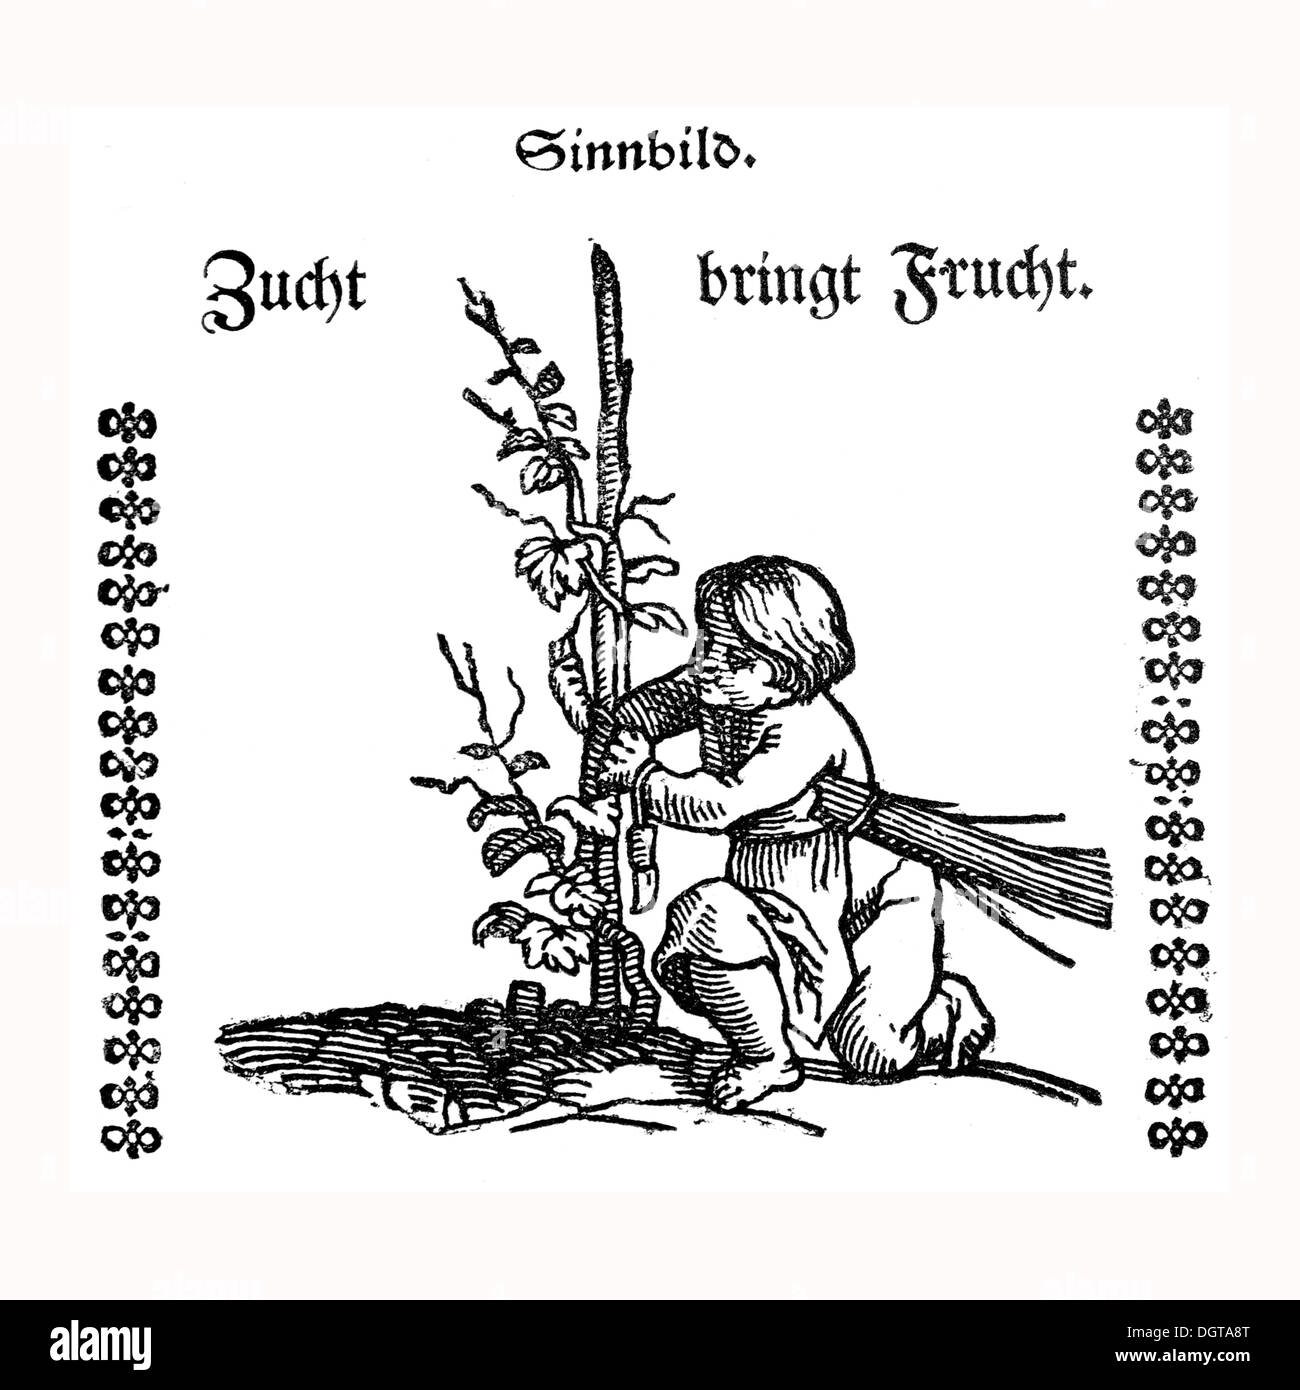 Allegorical depiction, 'Zucht bringt Frucht', breeding bears fruit, historic depiction in Deutsche Literaturgeschichte Stock Photo